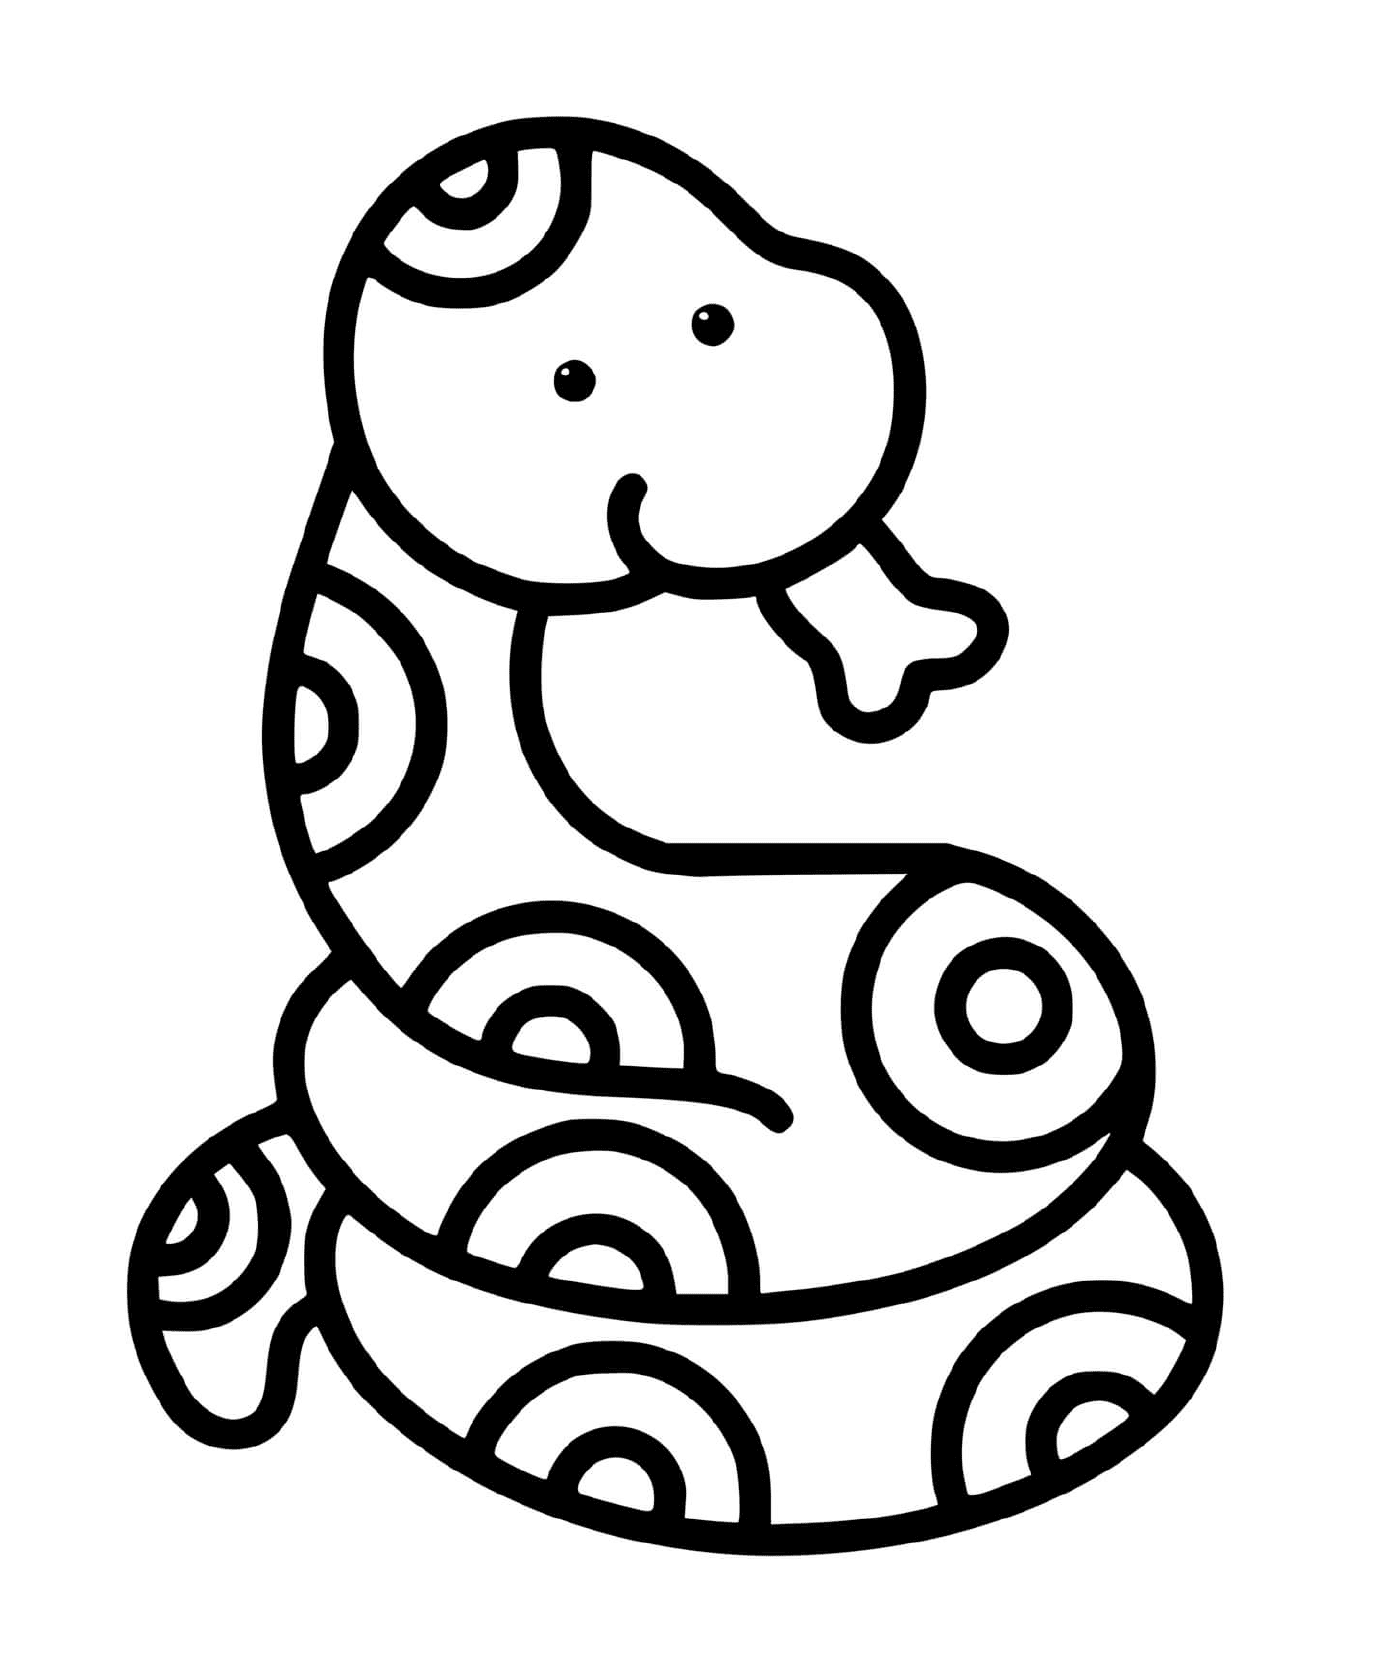   Un serpent facile à dessiner pour les enfants de 2 ans 